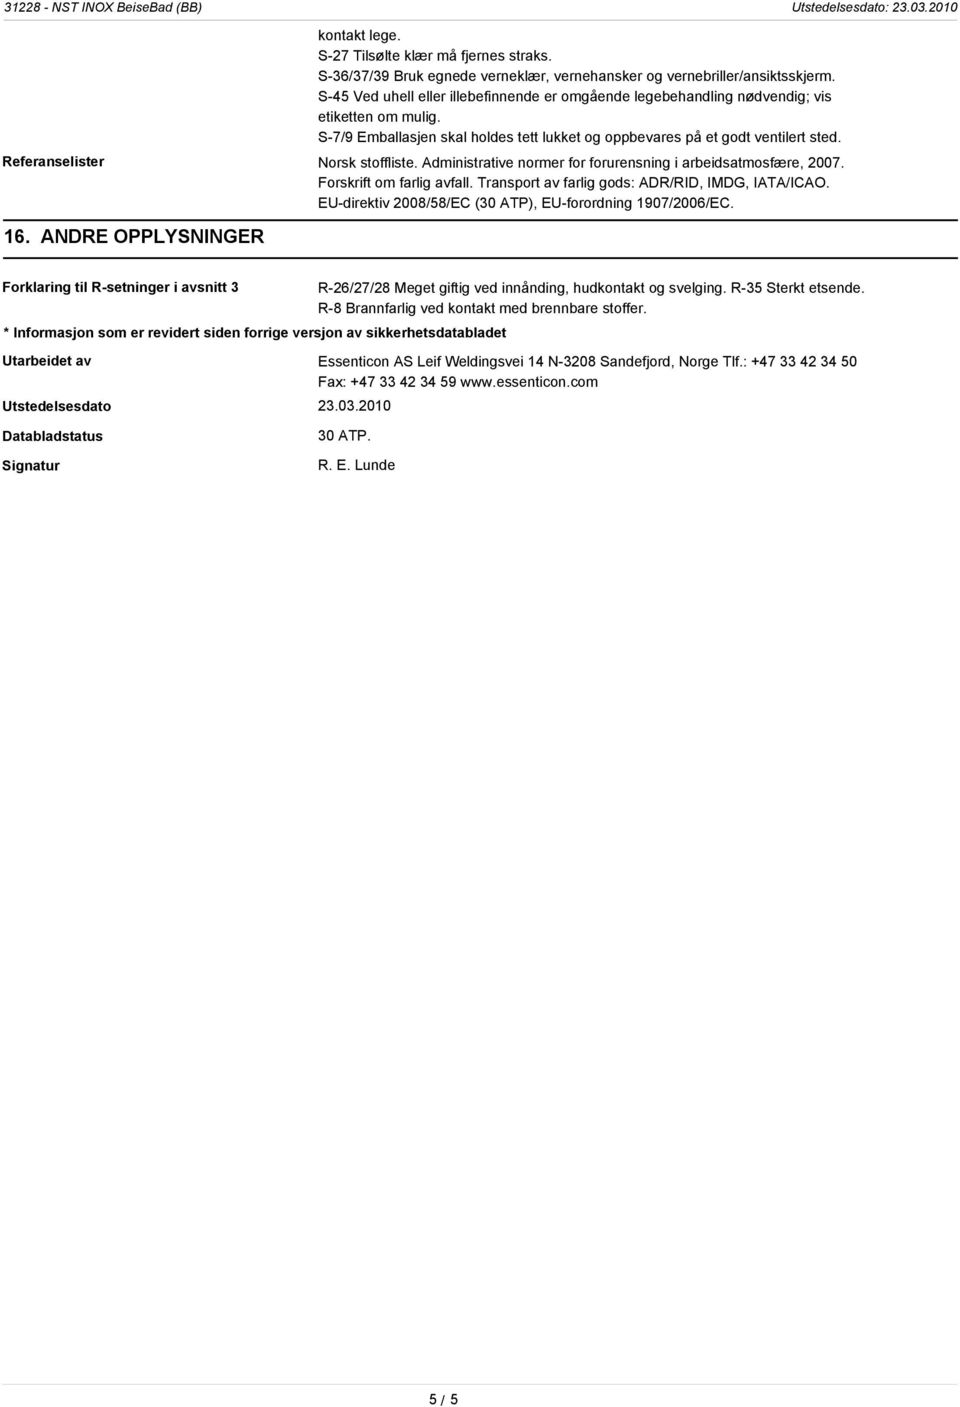 Referanselister Norsk stoffliste. Administrative normer for forurensning i arbeidsatmosfære, 2007. Forskrift om farlig avfall. Transport av farlig gods: ADR/RID, IMDG, IATA/ICAO.